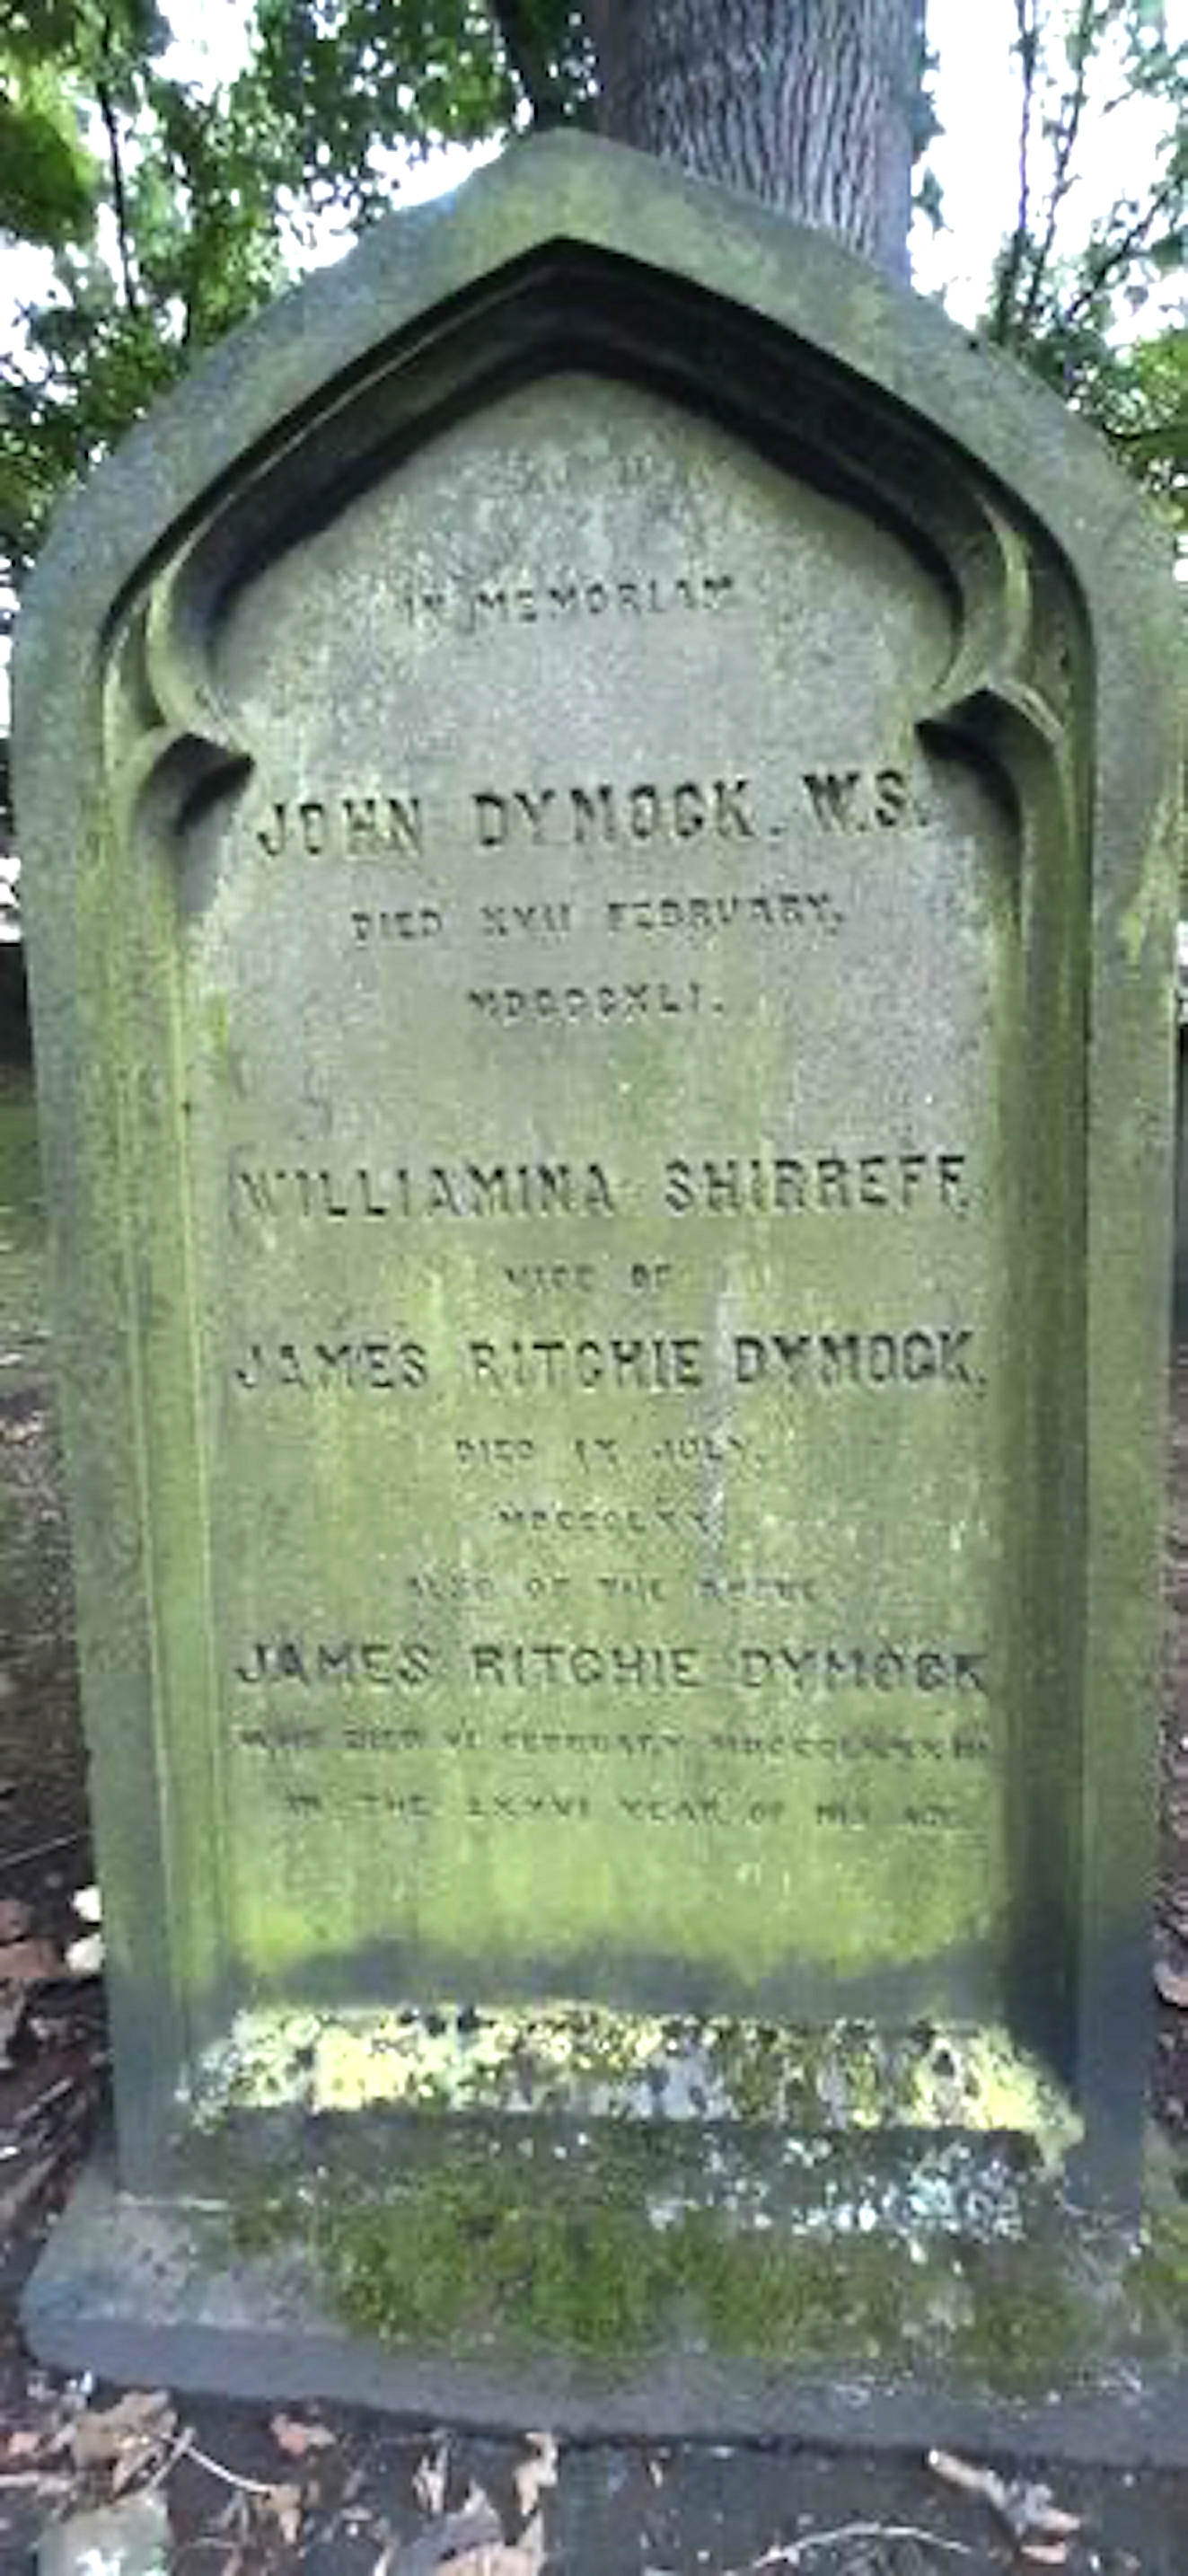 Gravestone of John Dymock husband of Margaret, St. Cuthbert’s Edinburgh